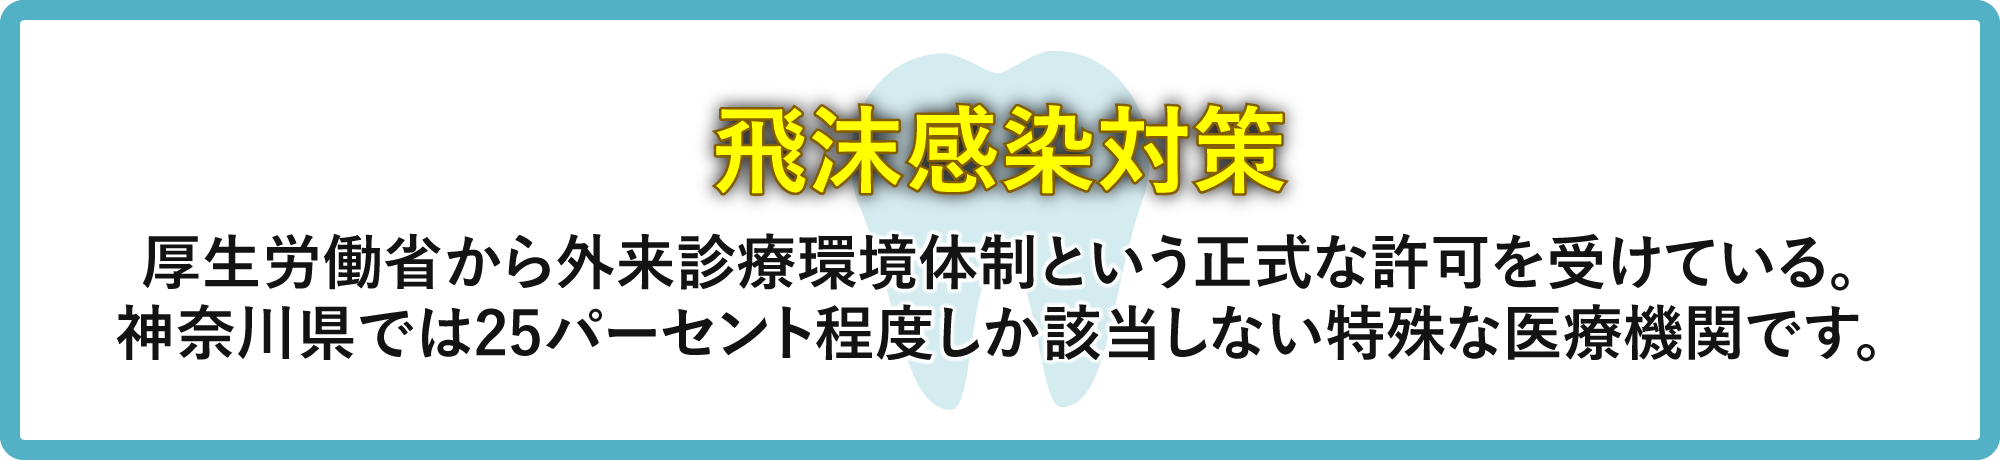 飛沫感染対策　厚生労働省から外来診療環境体制という正式な許可を受けている。神奈川県では25パーセント程度しか該当しない特殊な医療機関です。